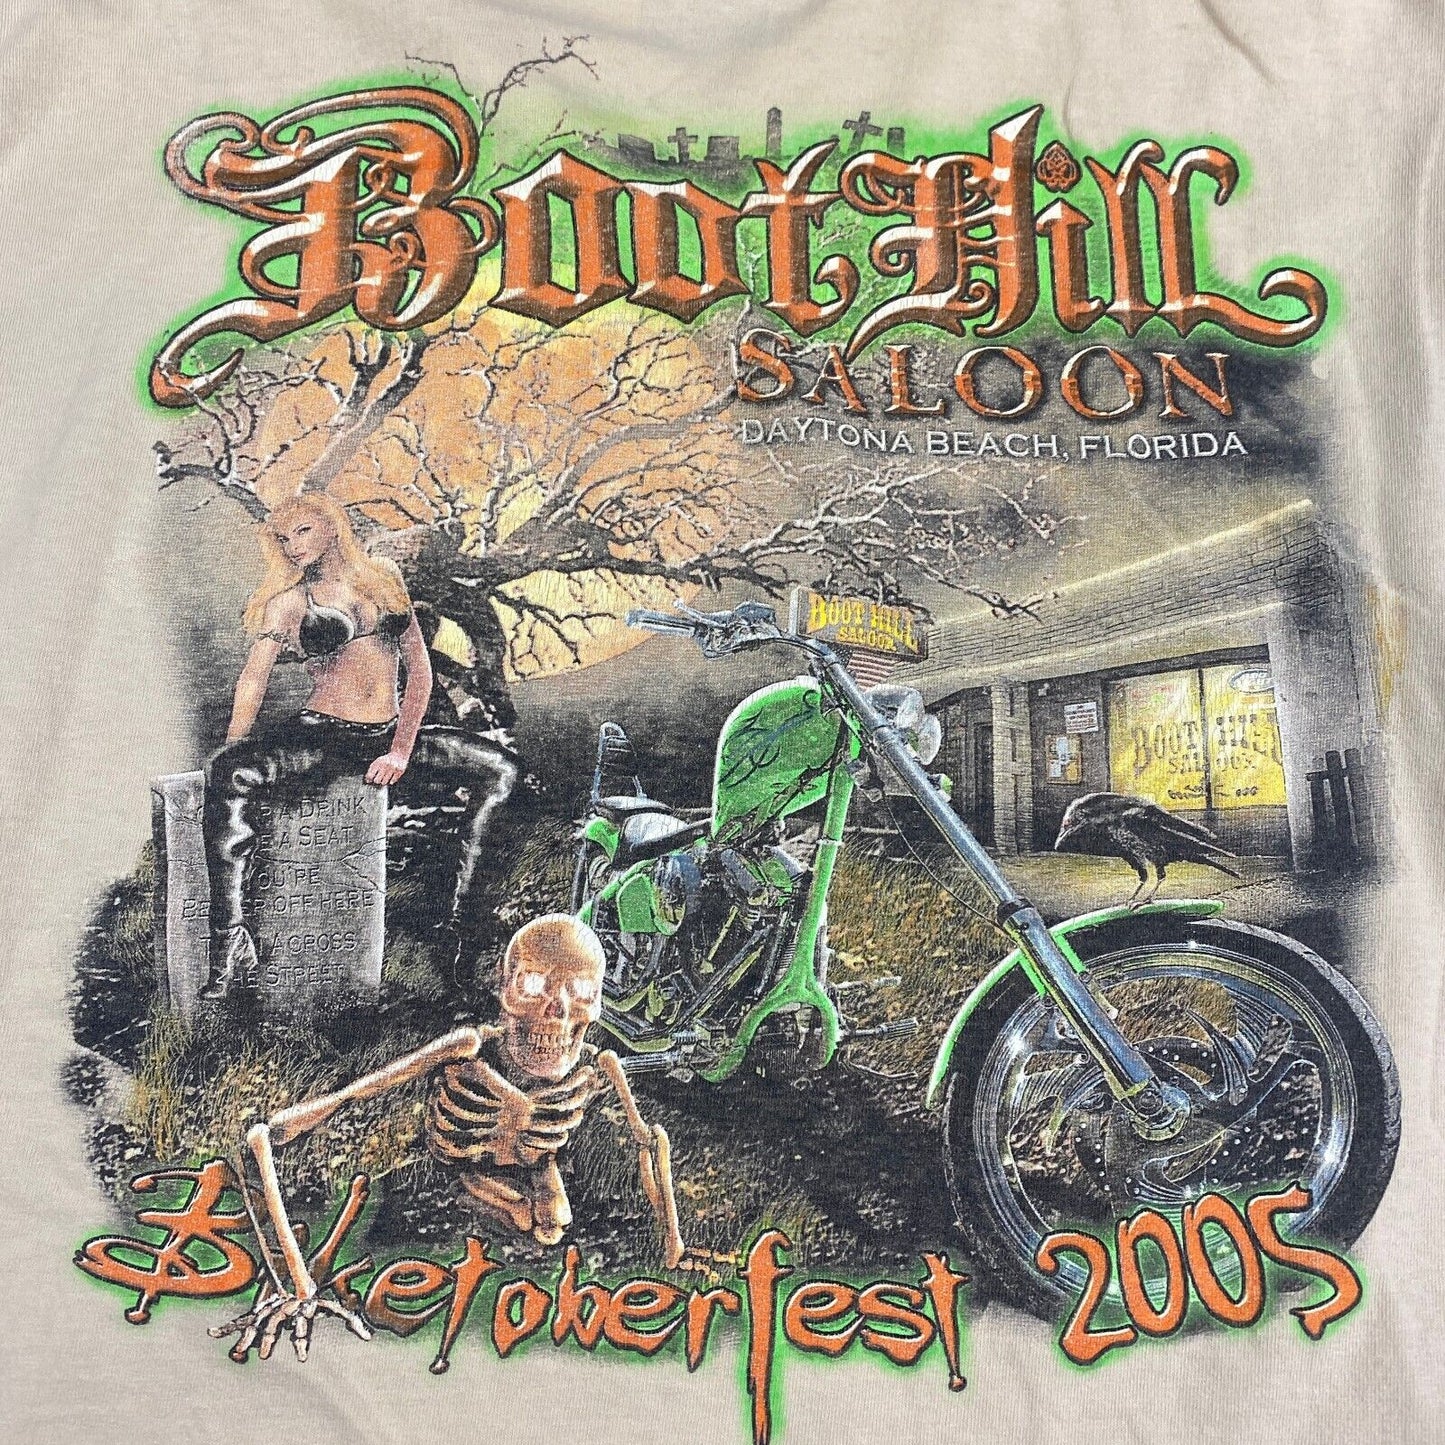 VINTAGE Boot Hill Saloon Biketoberfest Faded Tan Biker T-Shirt sz M-L Adult